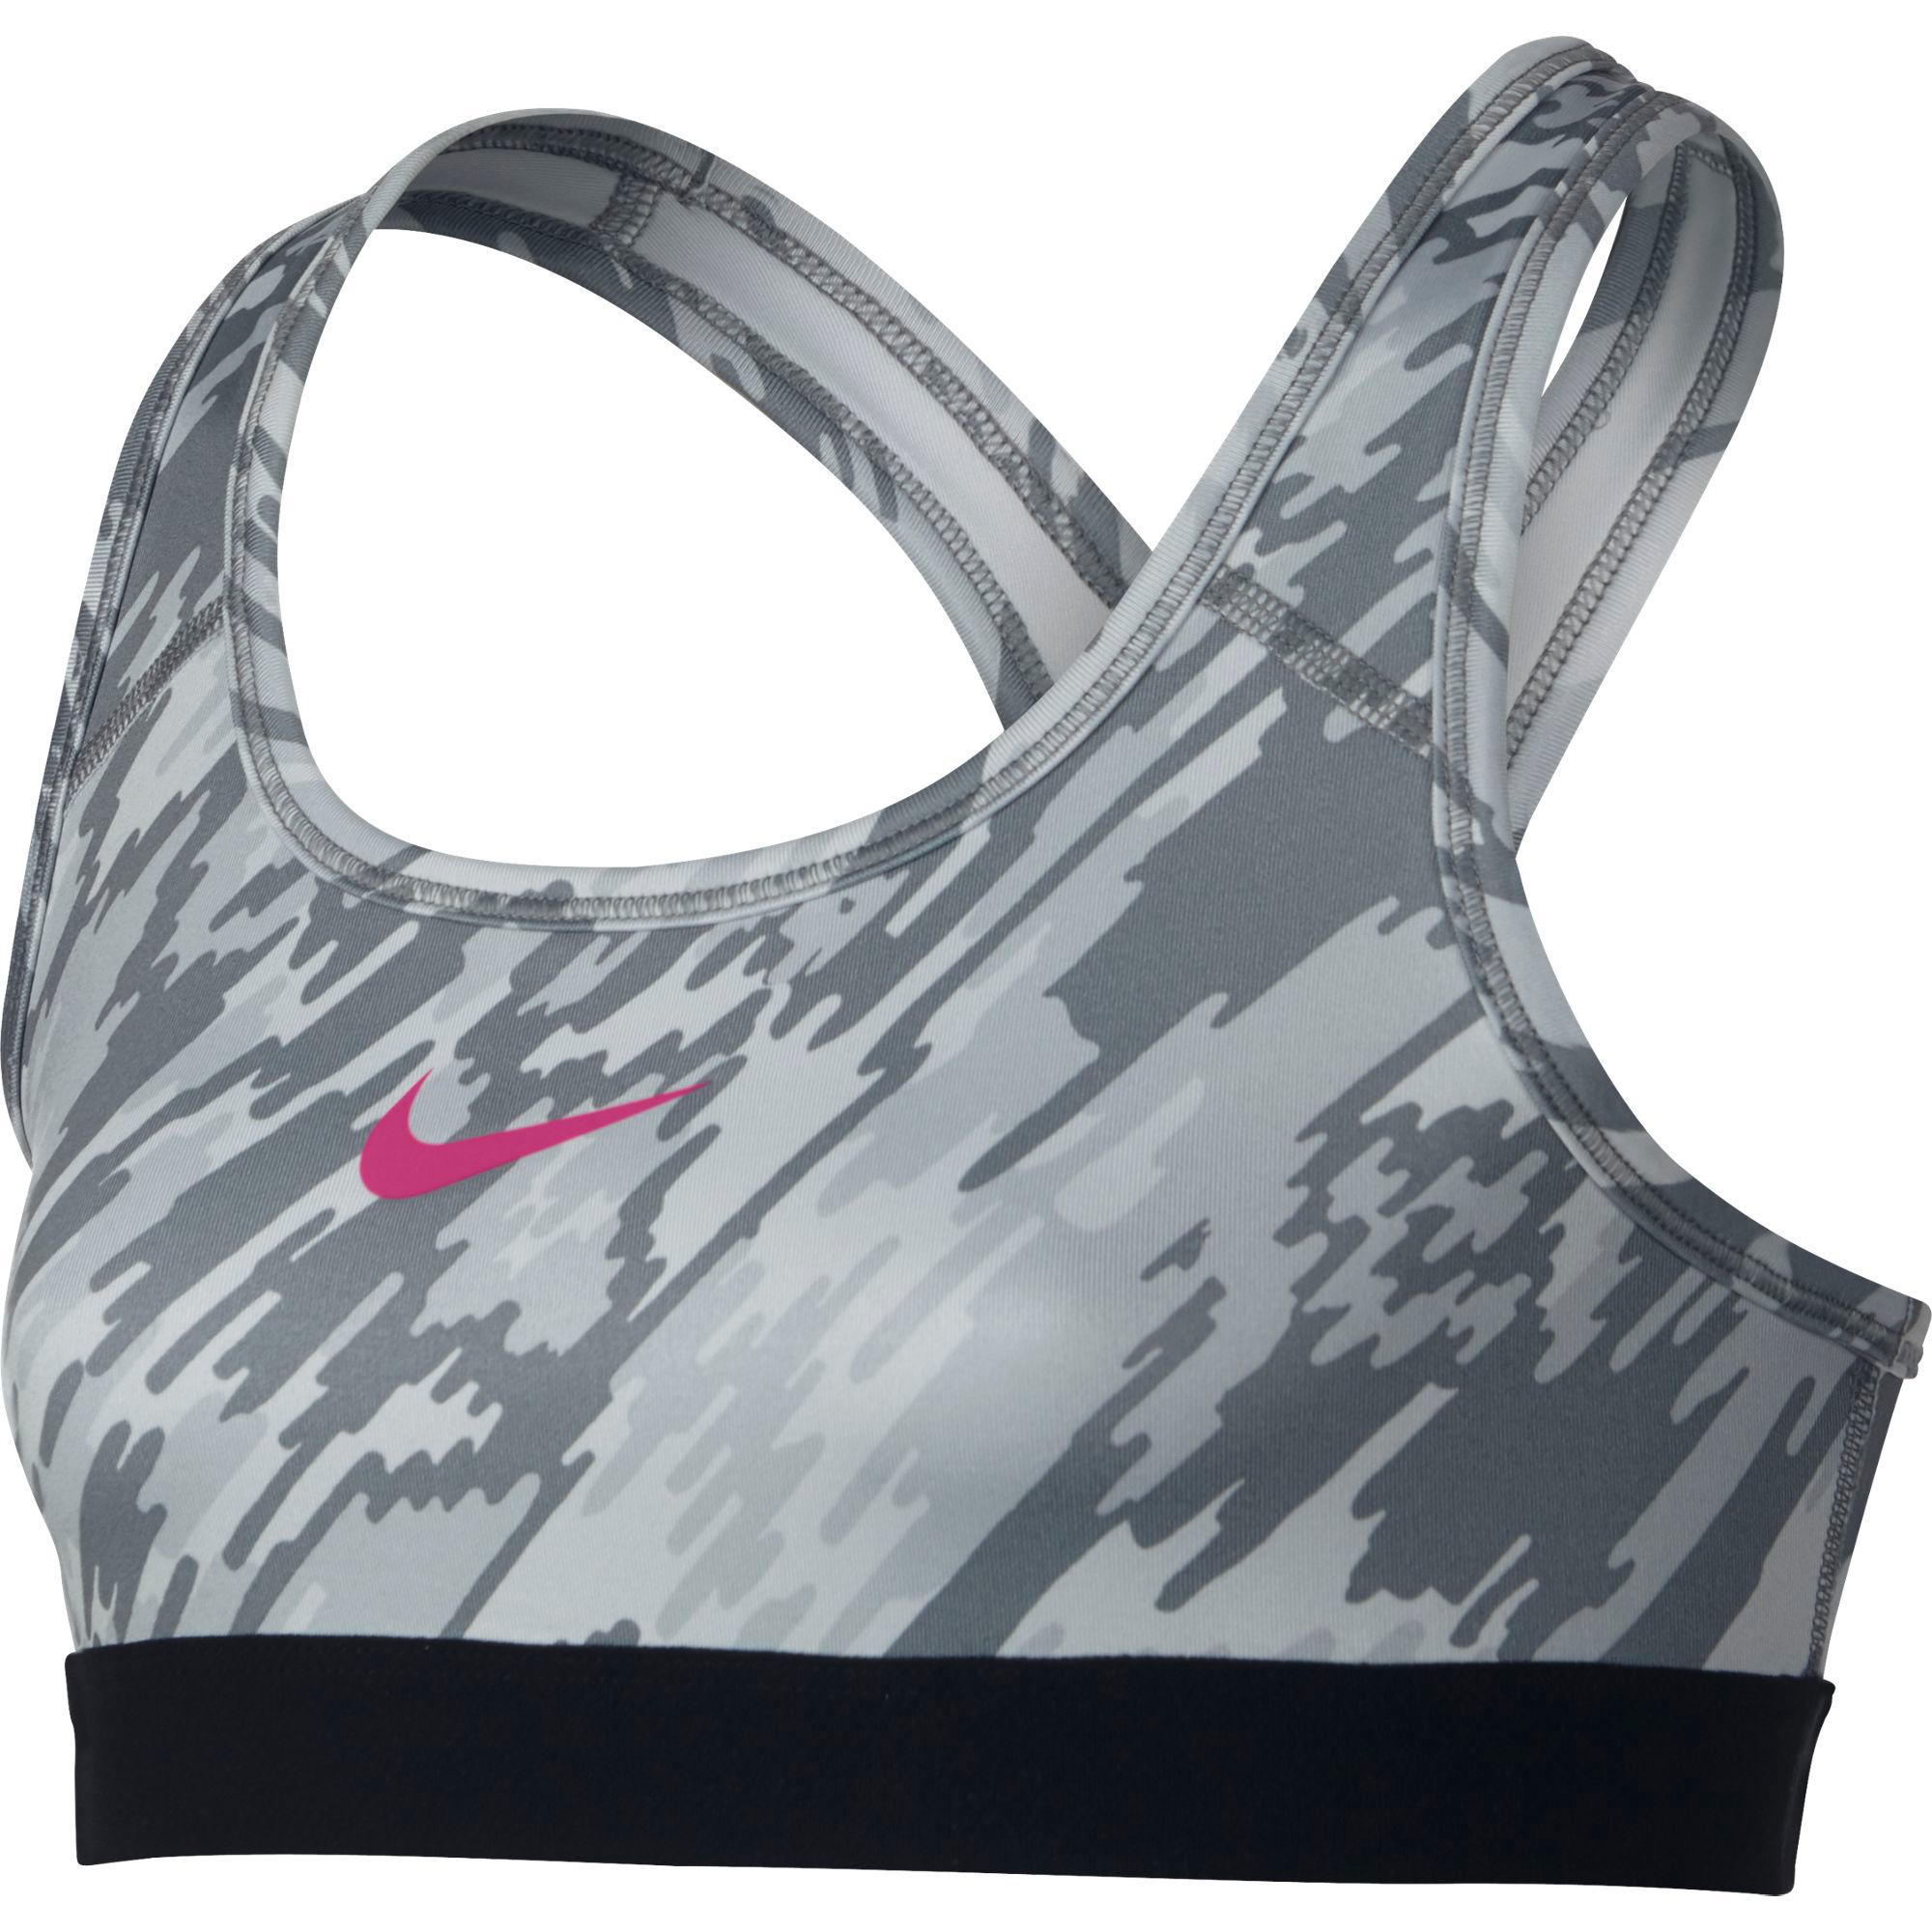 Nike Girls Pro Sports Bra - Grey/Black - Tennisnuts.com